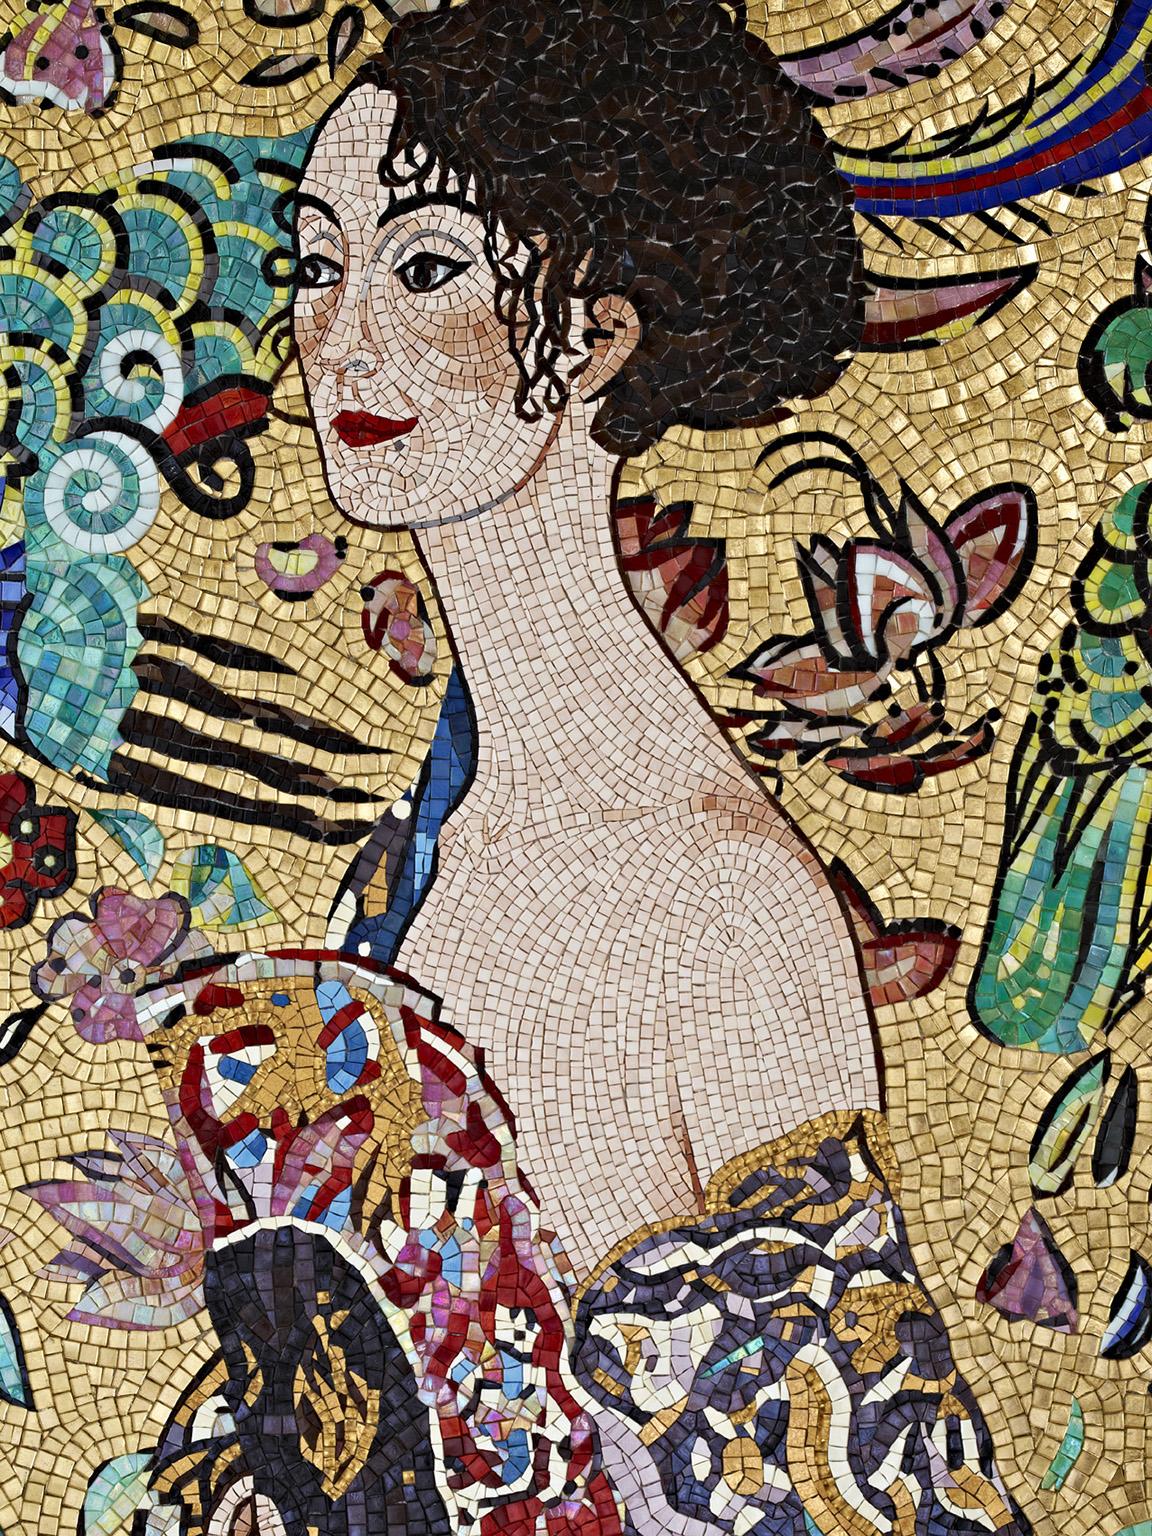 Die Herstellung von Artistics Mosaic, Design von unvergleichlicher Schönheit, die Erfindung von Tromp l'Oeil